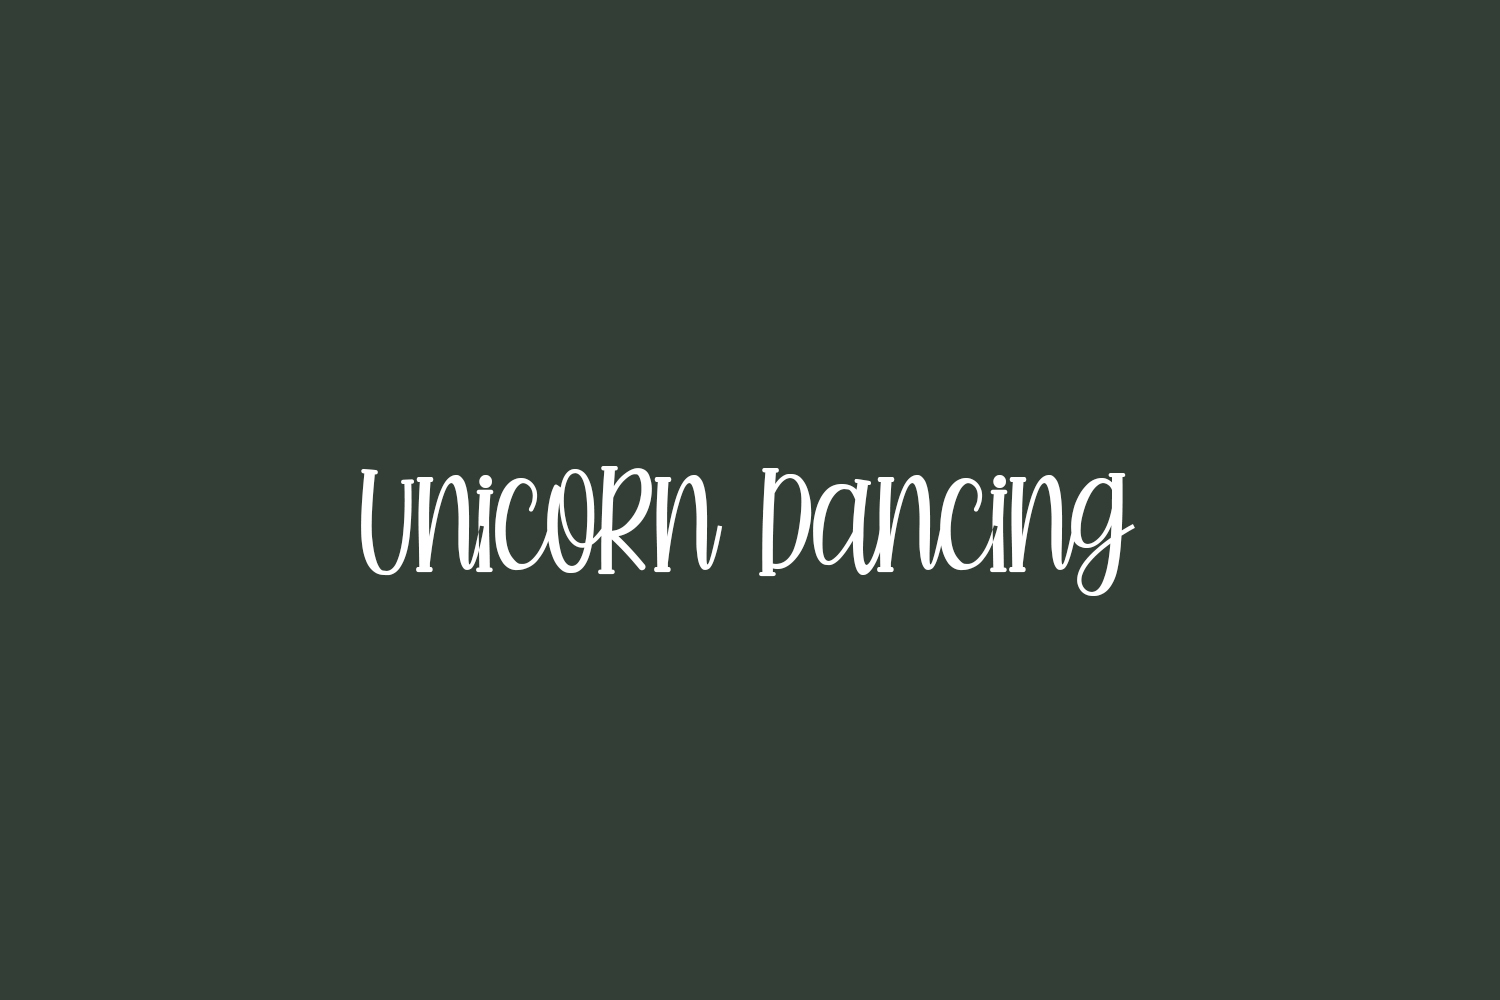 Unicorn Dancing